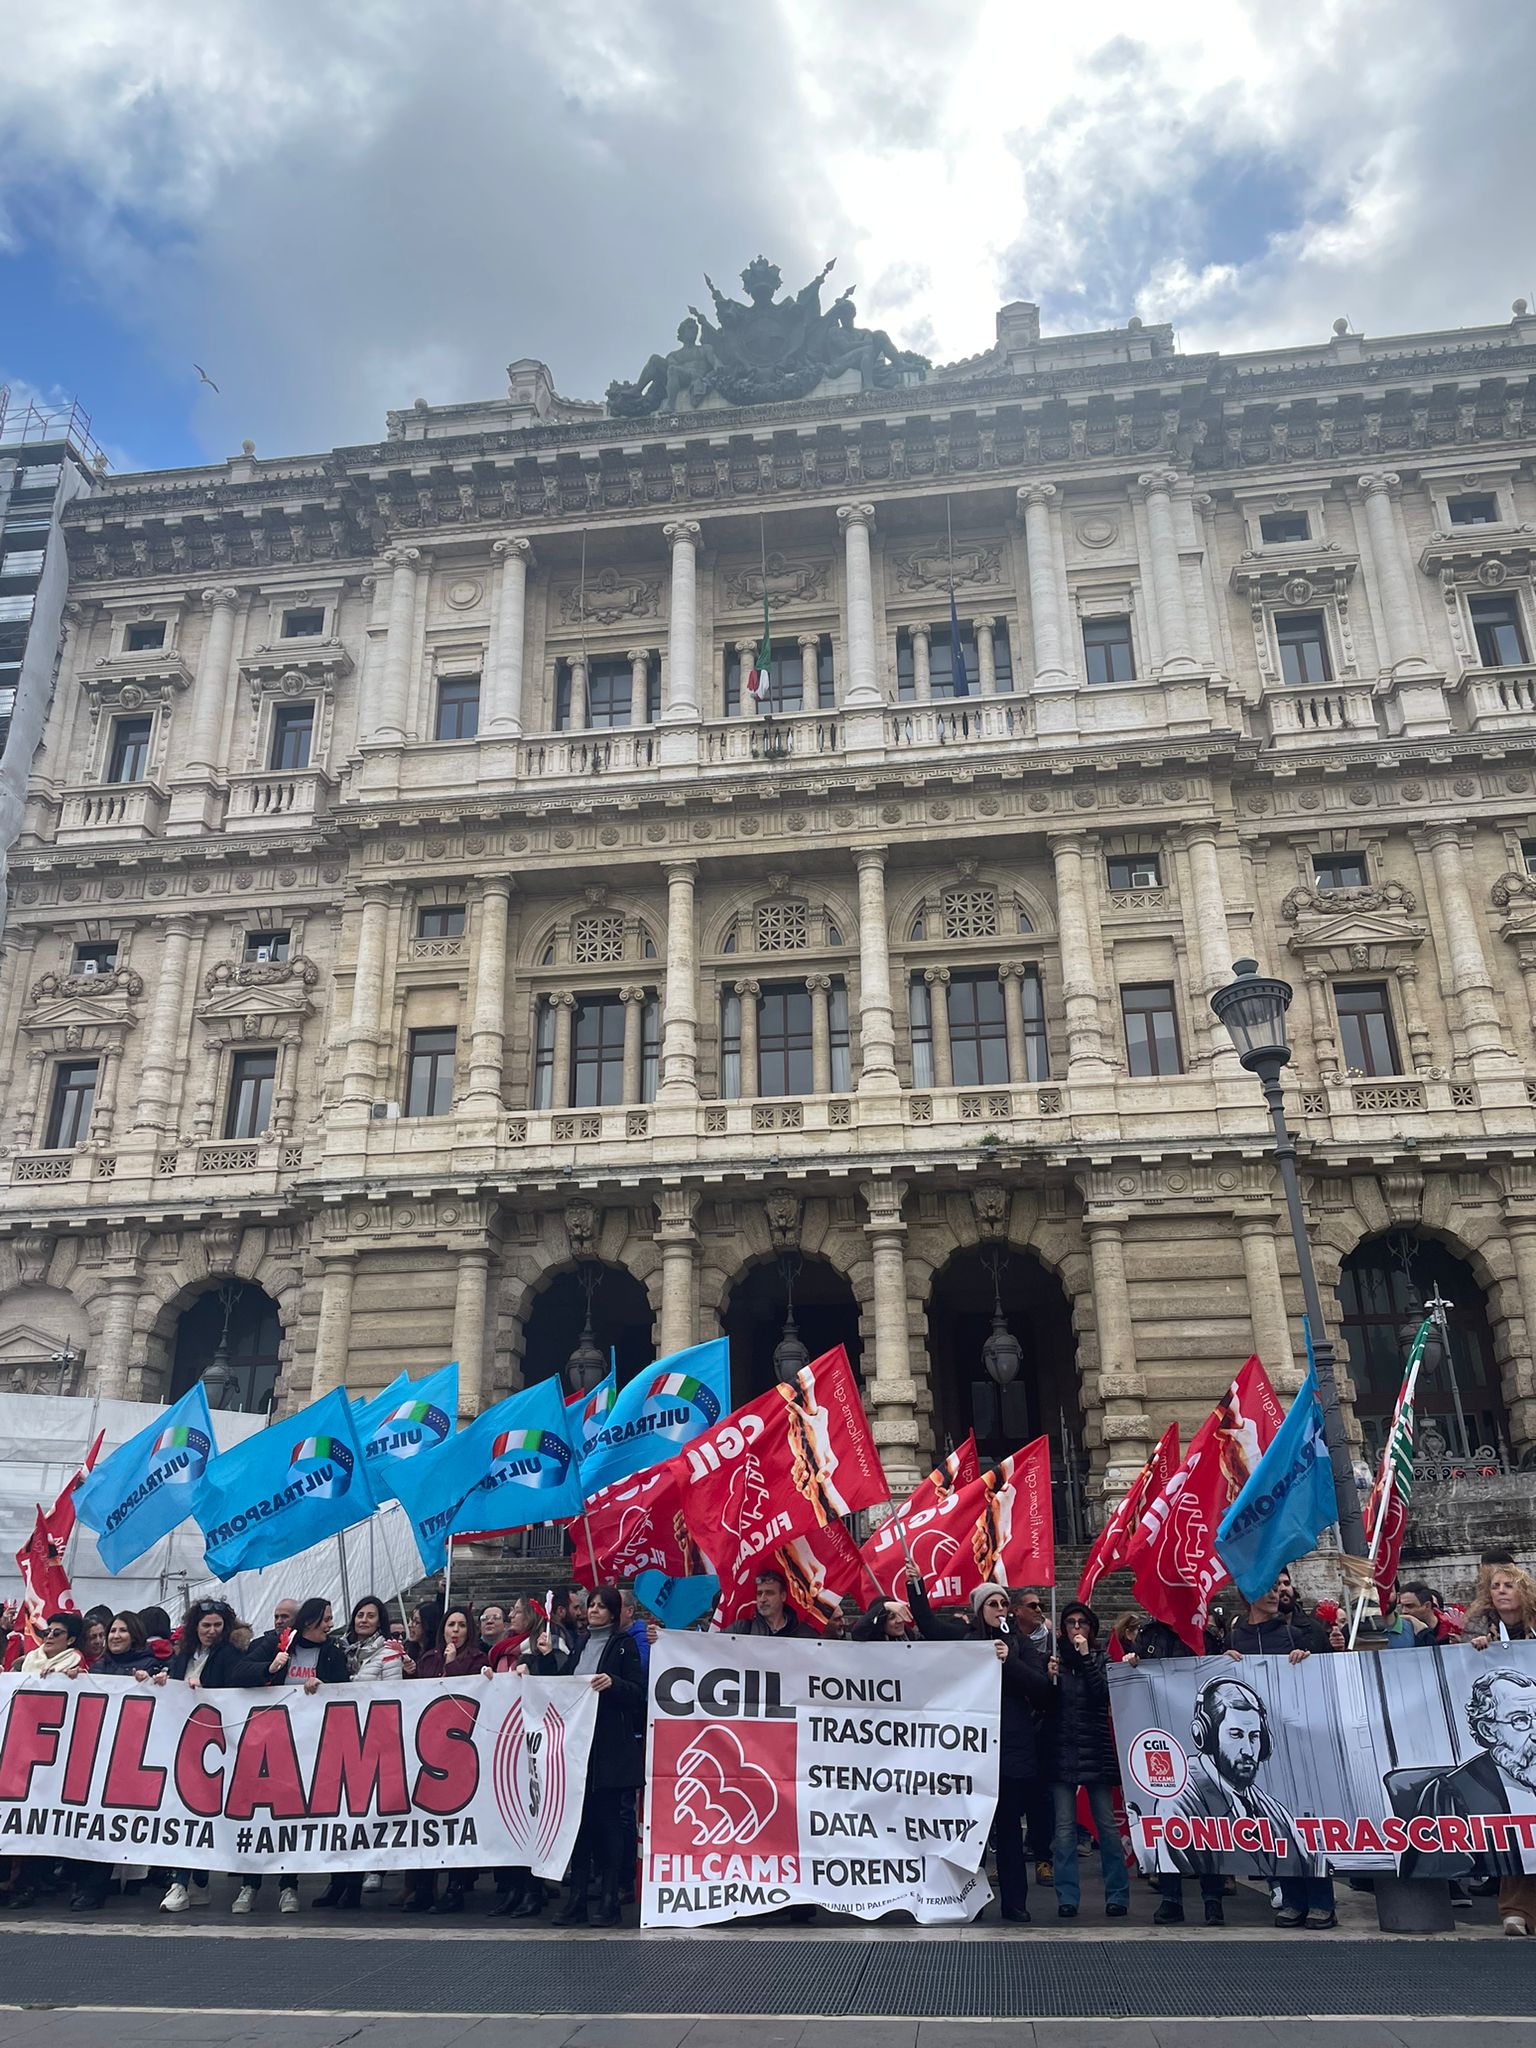 Ministero Giustizia, grande partecipazione allo sciopero e al presidio di Fonici, Trascrittori e Stenotipisti forensi